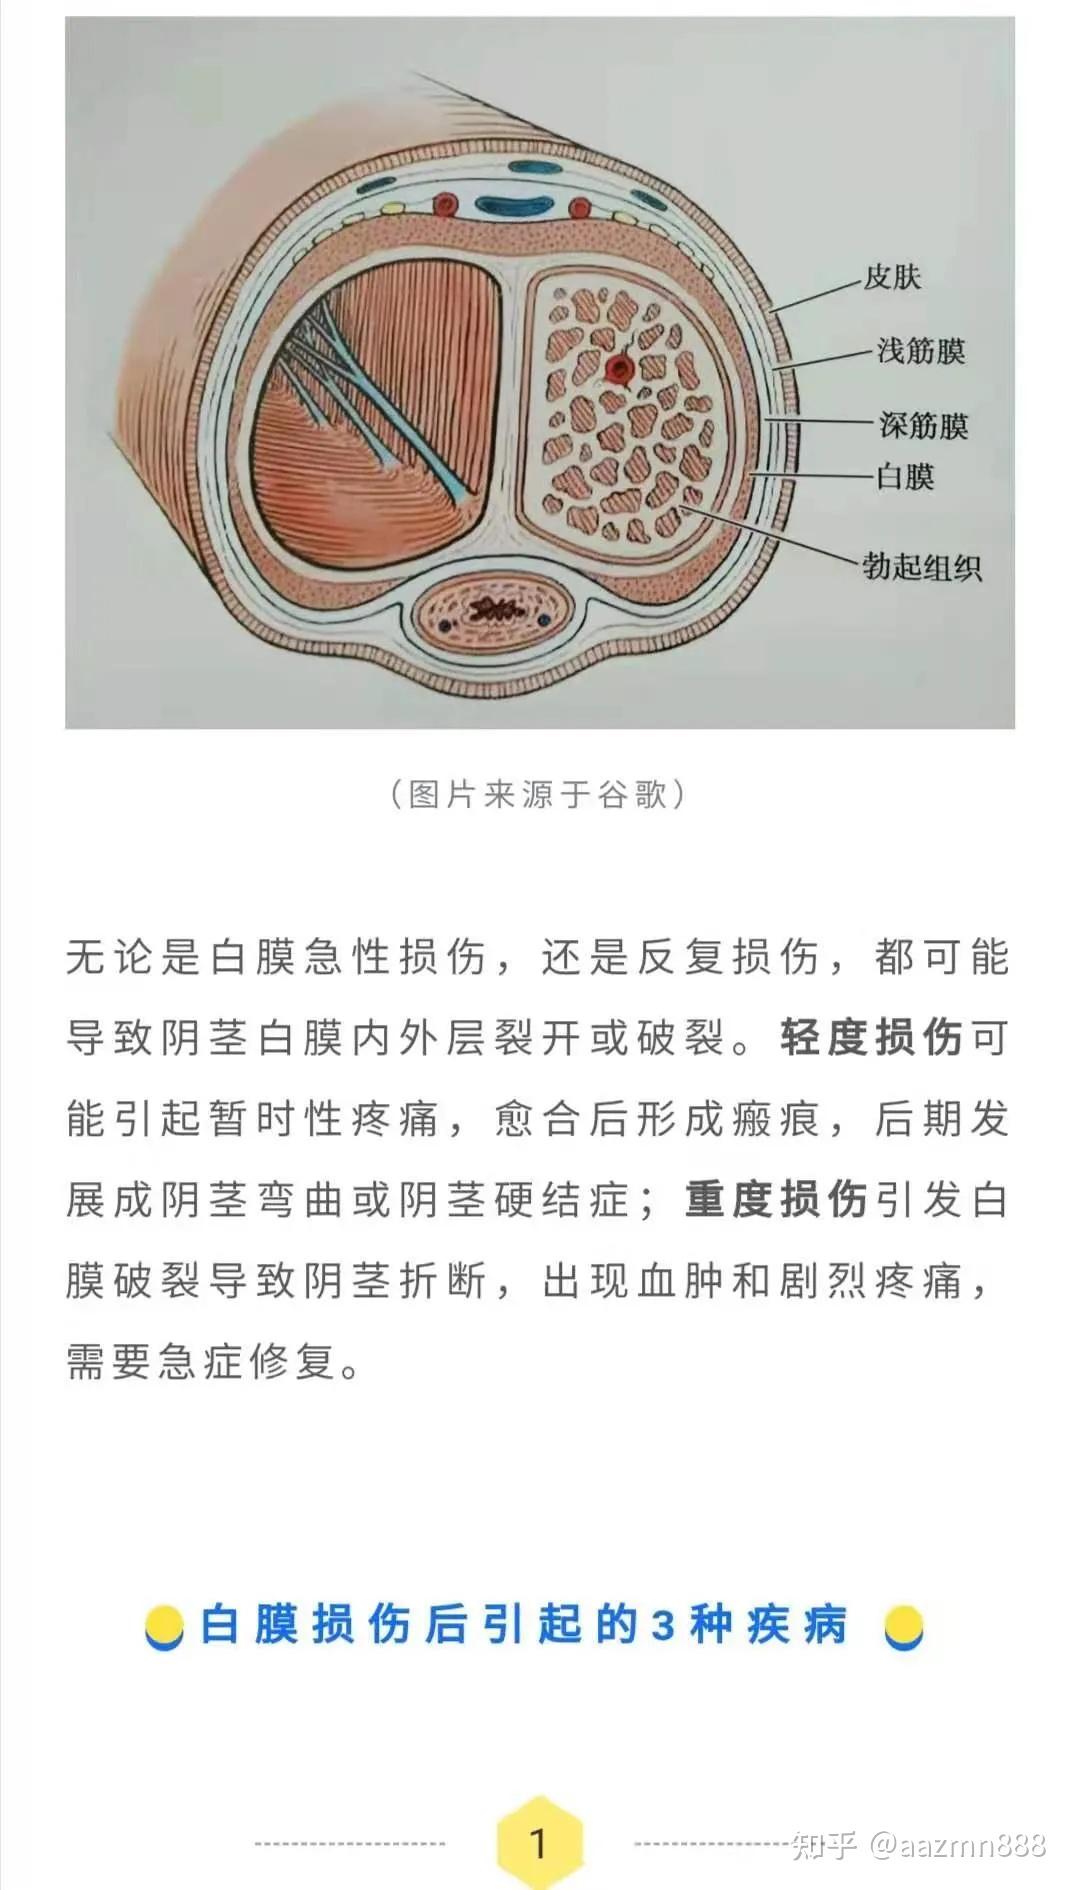 吸收性明胶海绵 B型-江西省祥恩医疗科技发展有限公司